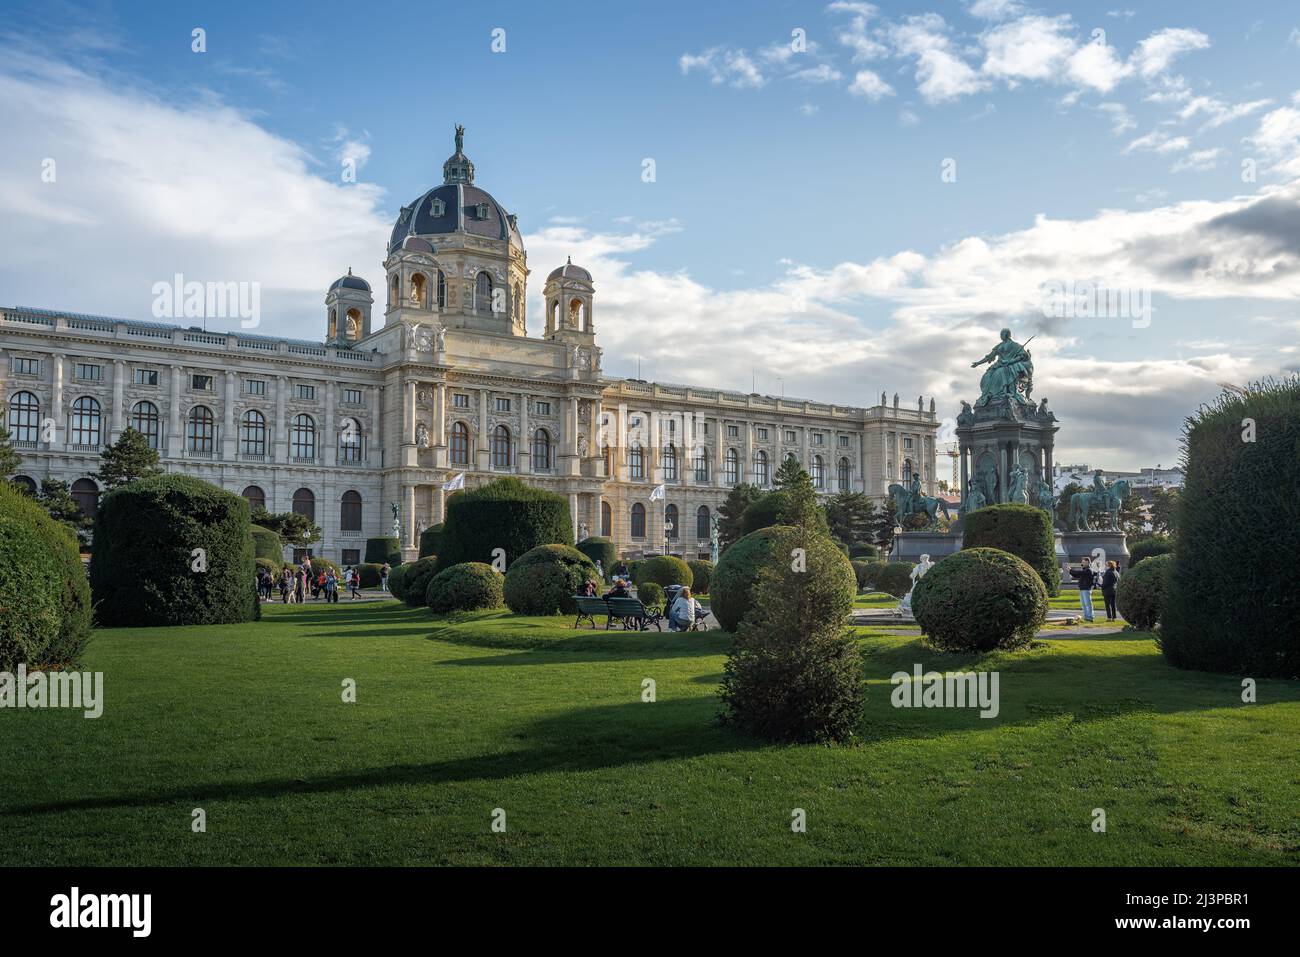 Musée d'histoire de l'art (Musée Kunsthistorisches) à la place Maria Theresa (Maria Theresien Platz) - Vienne, Autriche Banque D'Images